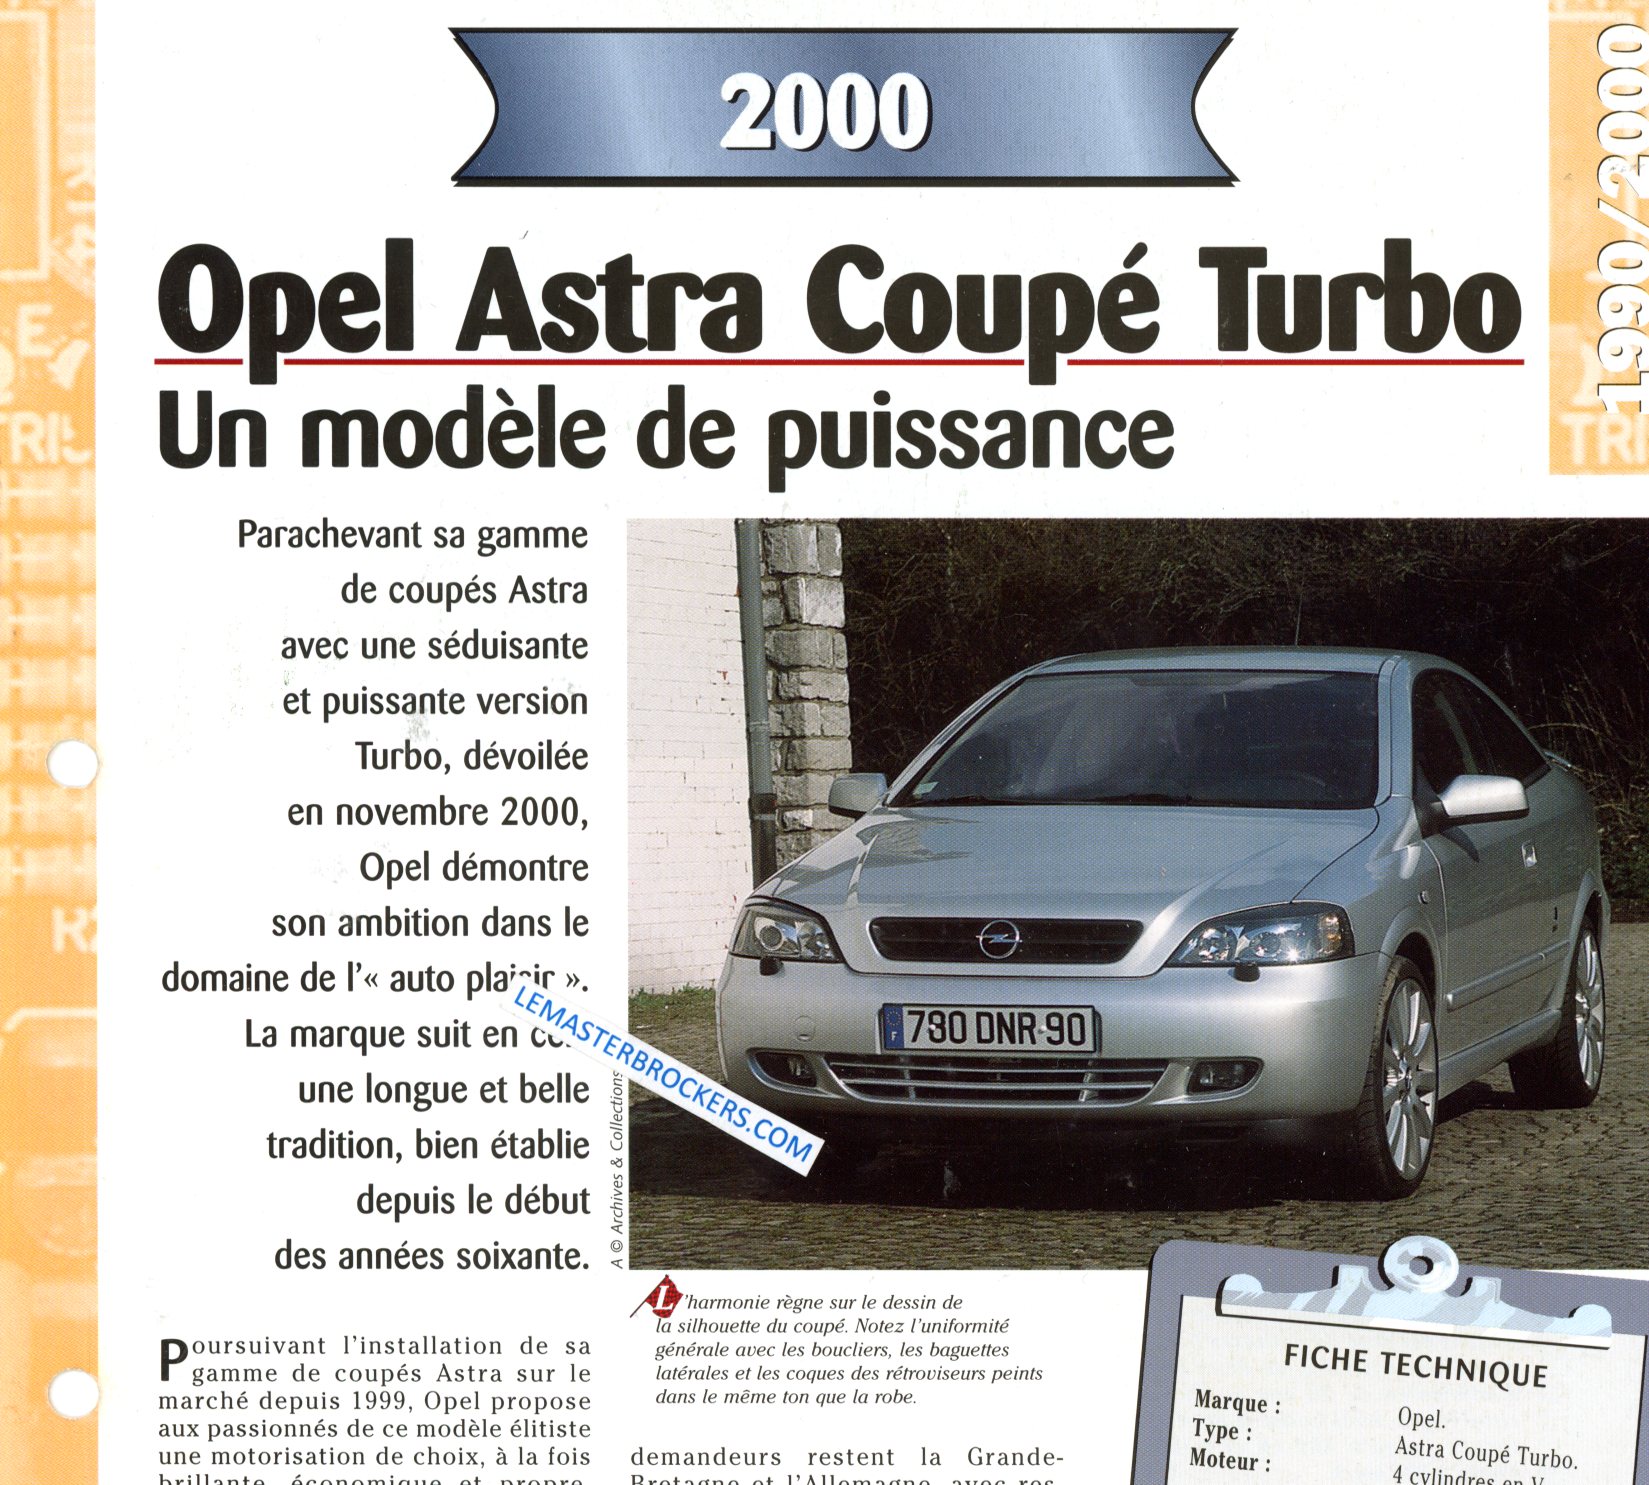 OPEL ASTRA COUPE TURBO 2000 FICHE TECHNIQUE